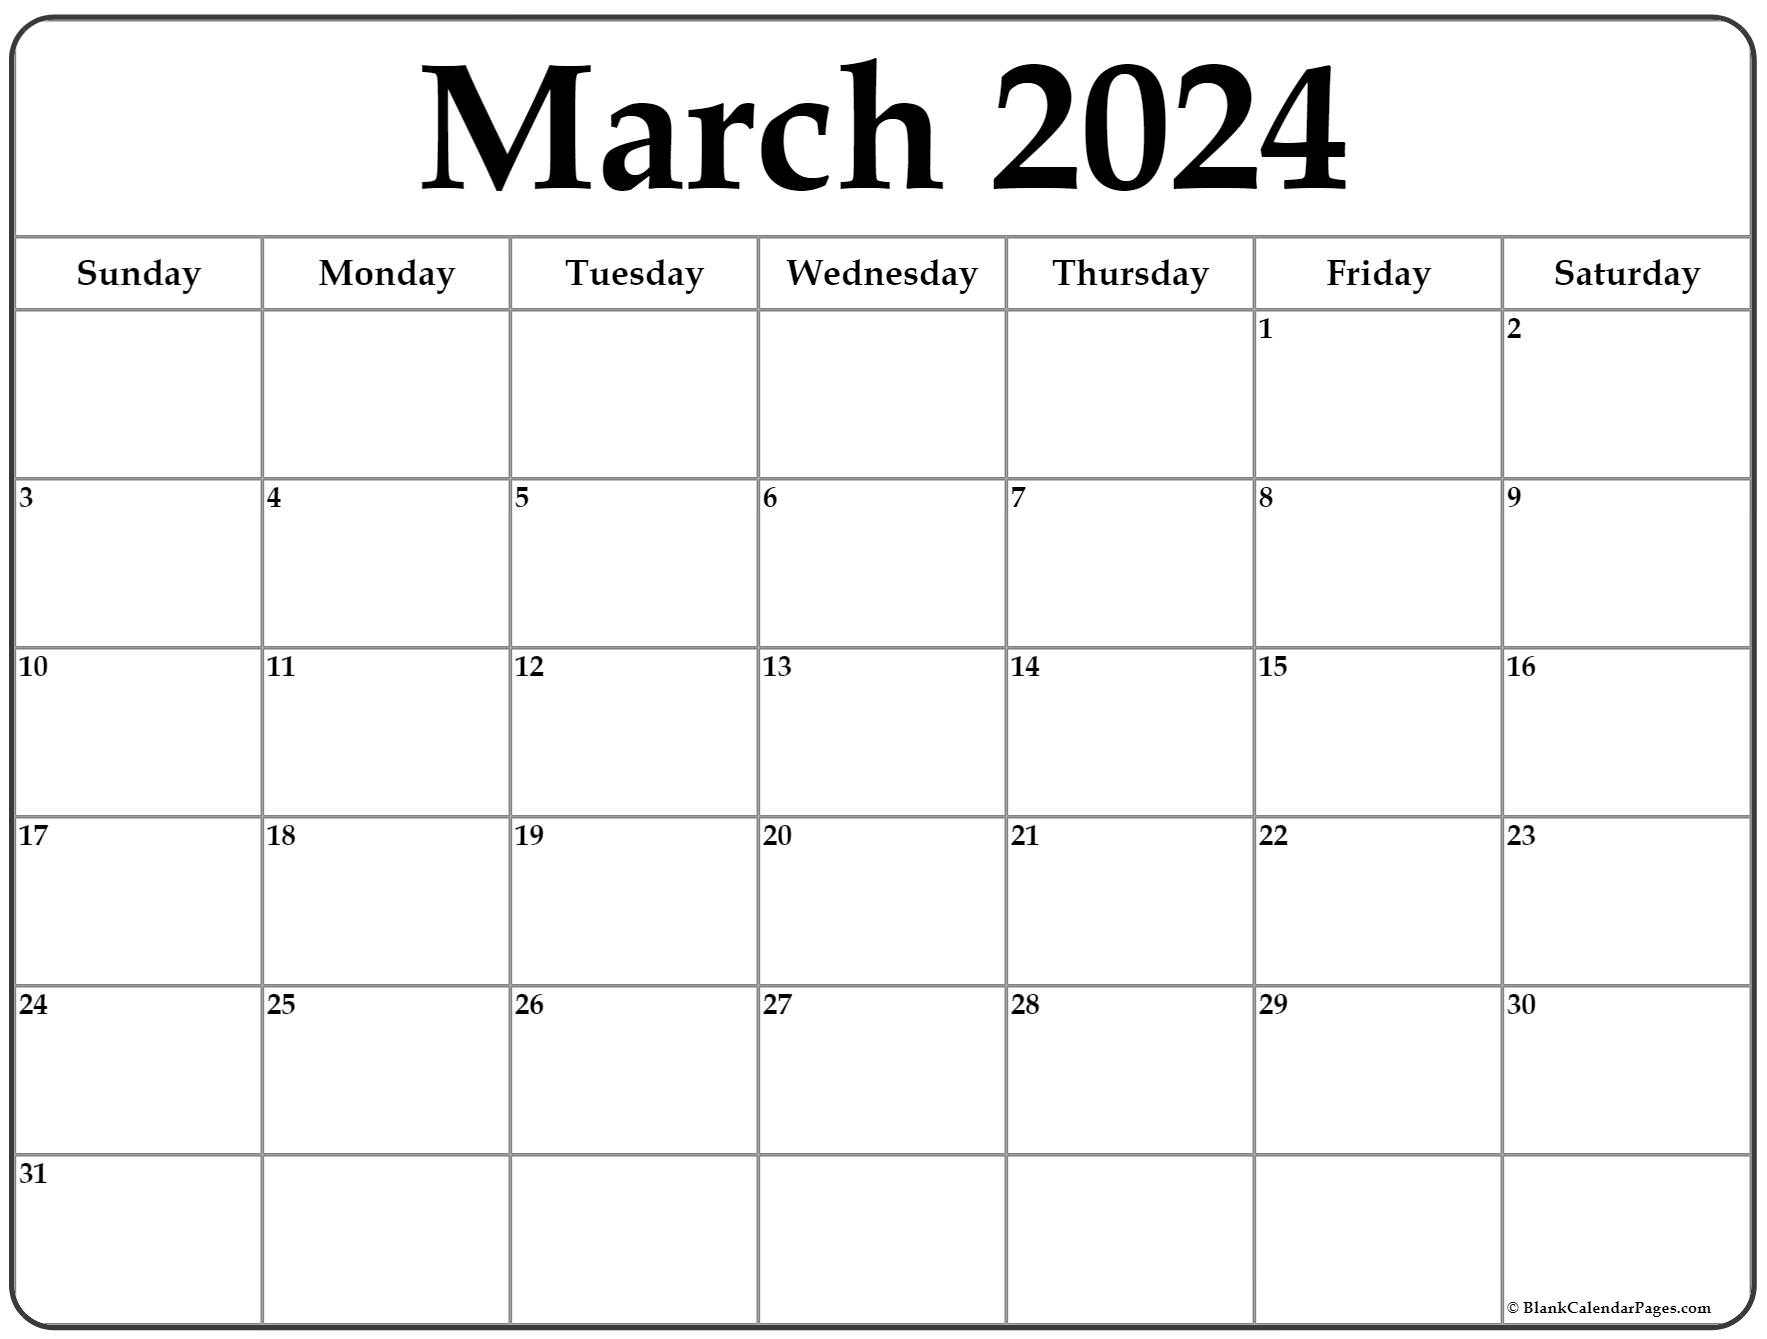 March 2022 Editable Calendar March 2022 Calendar | Free Printable Calendar Templates